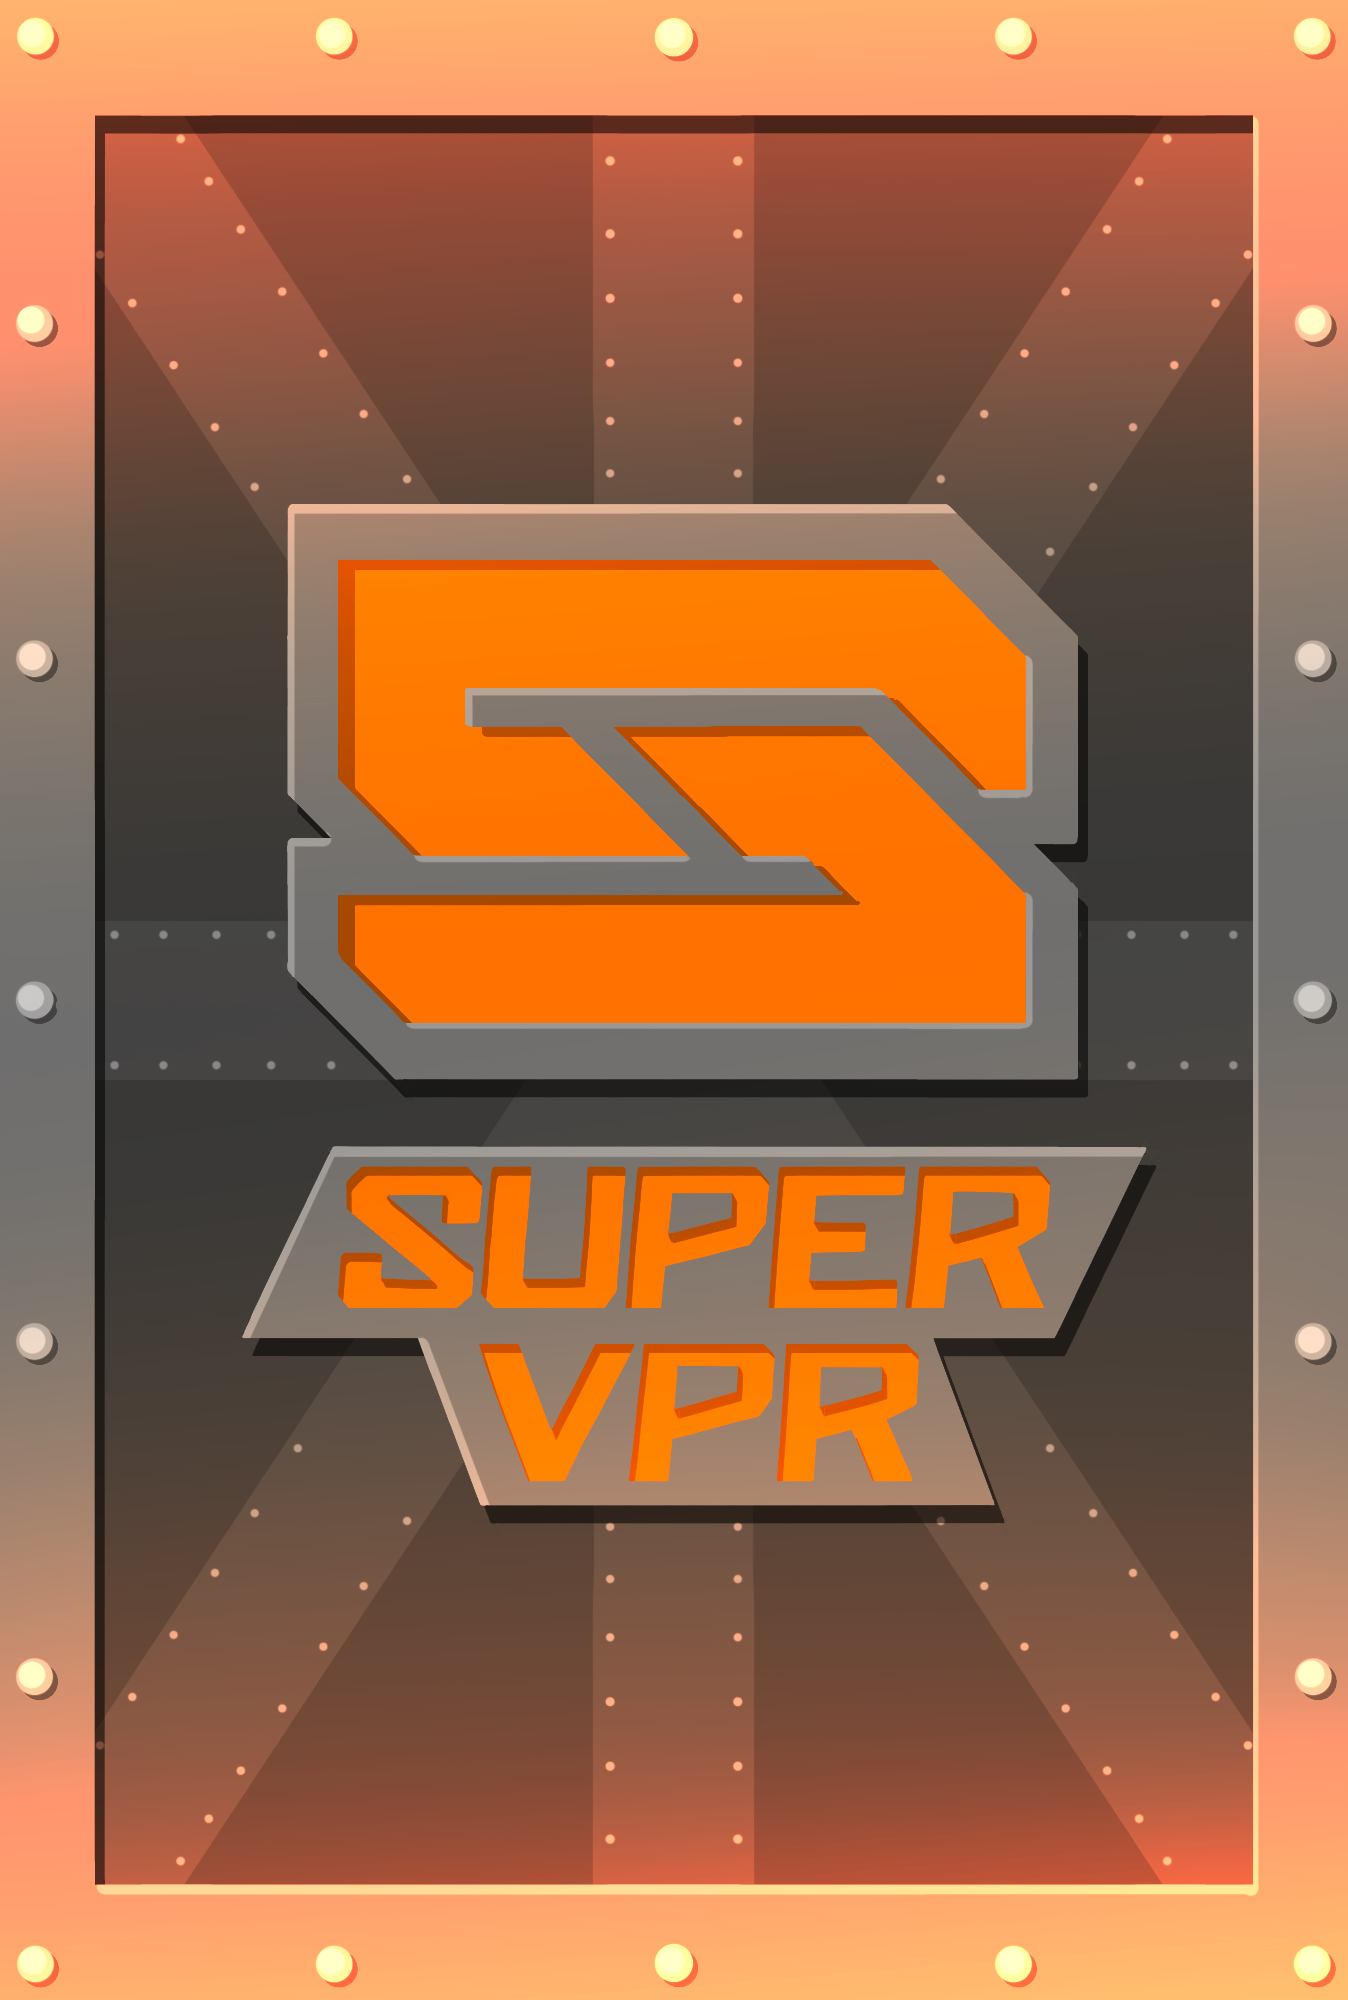 Super VPR 800